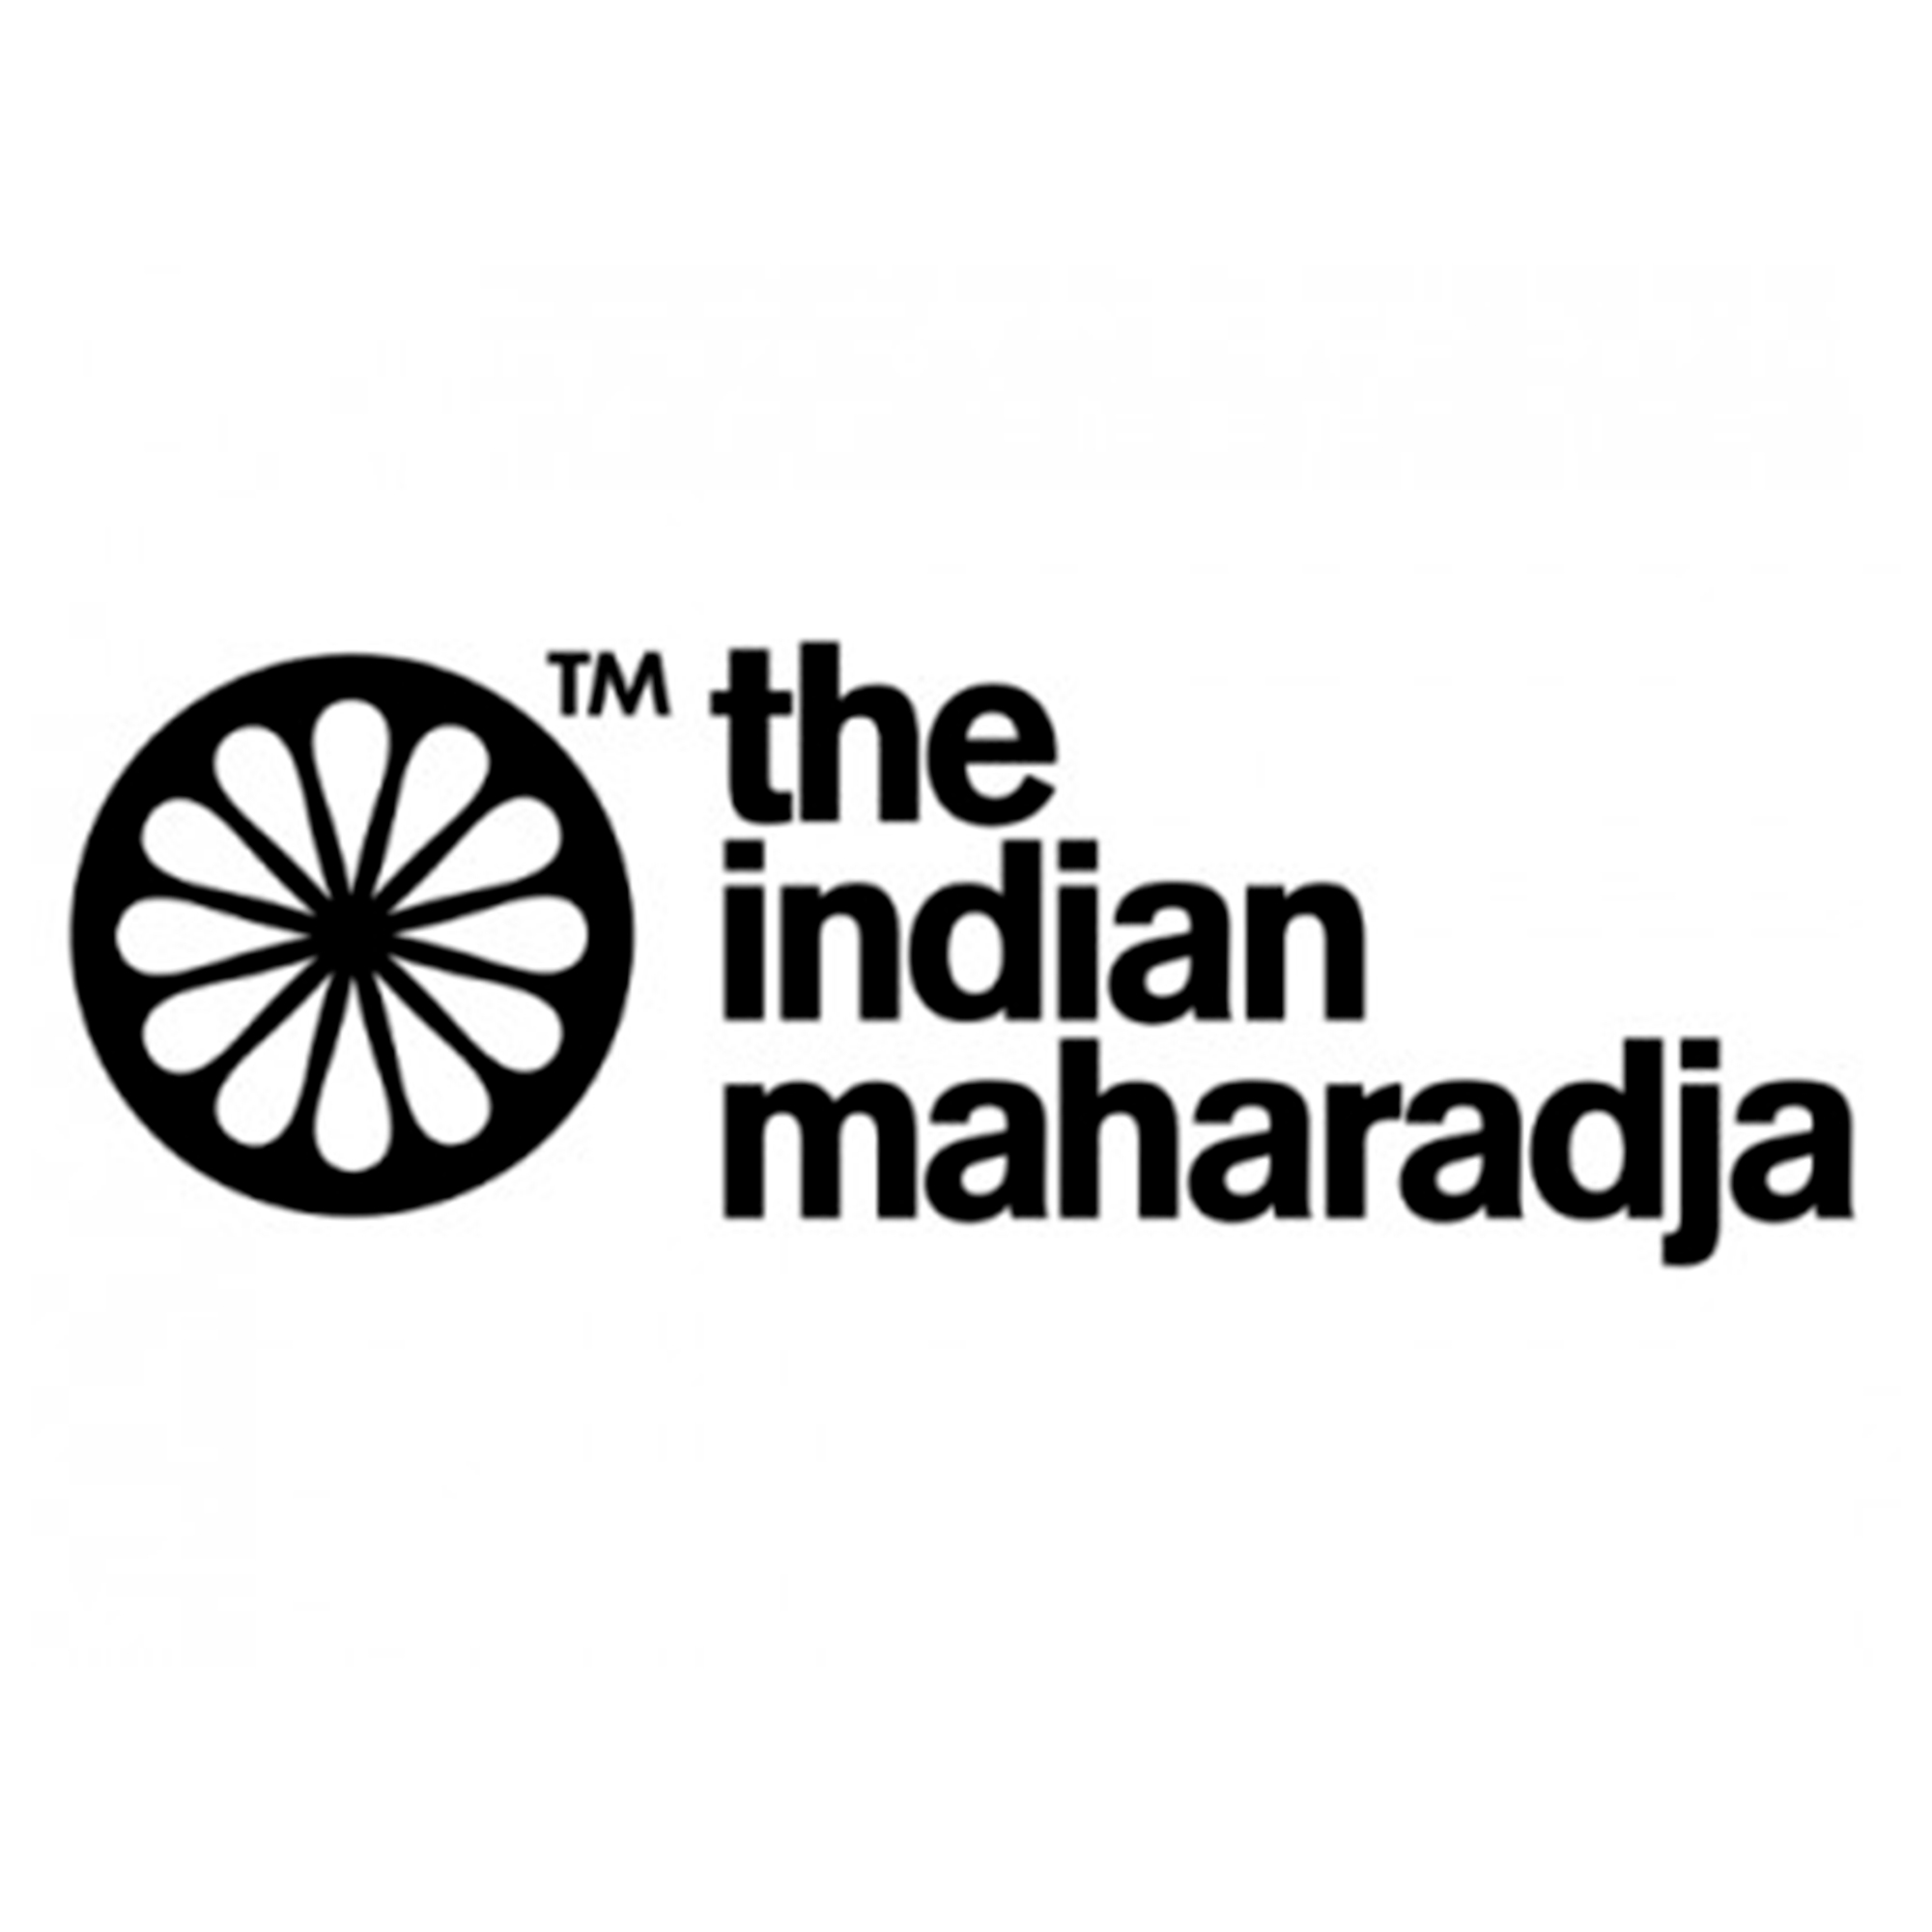 THE INDIAN MAHARADJA